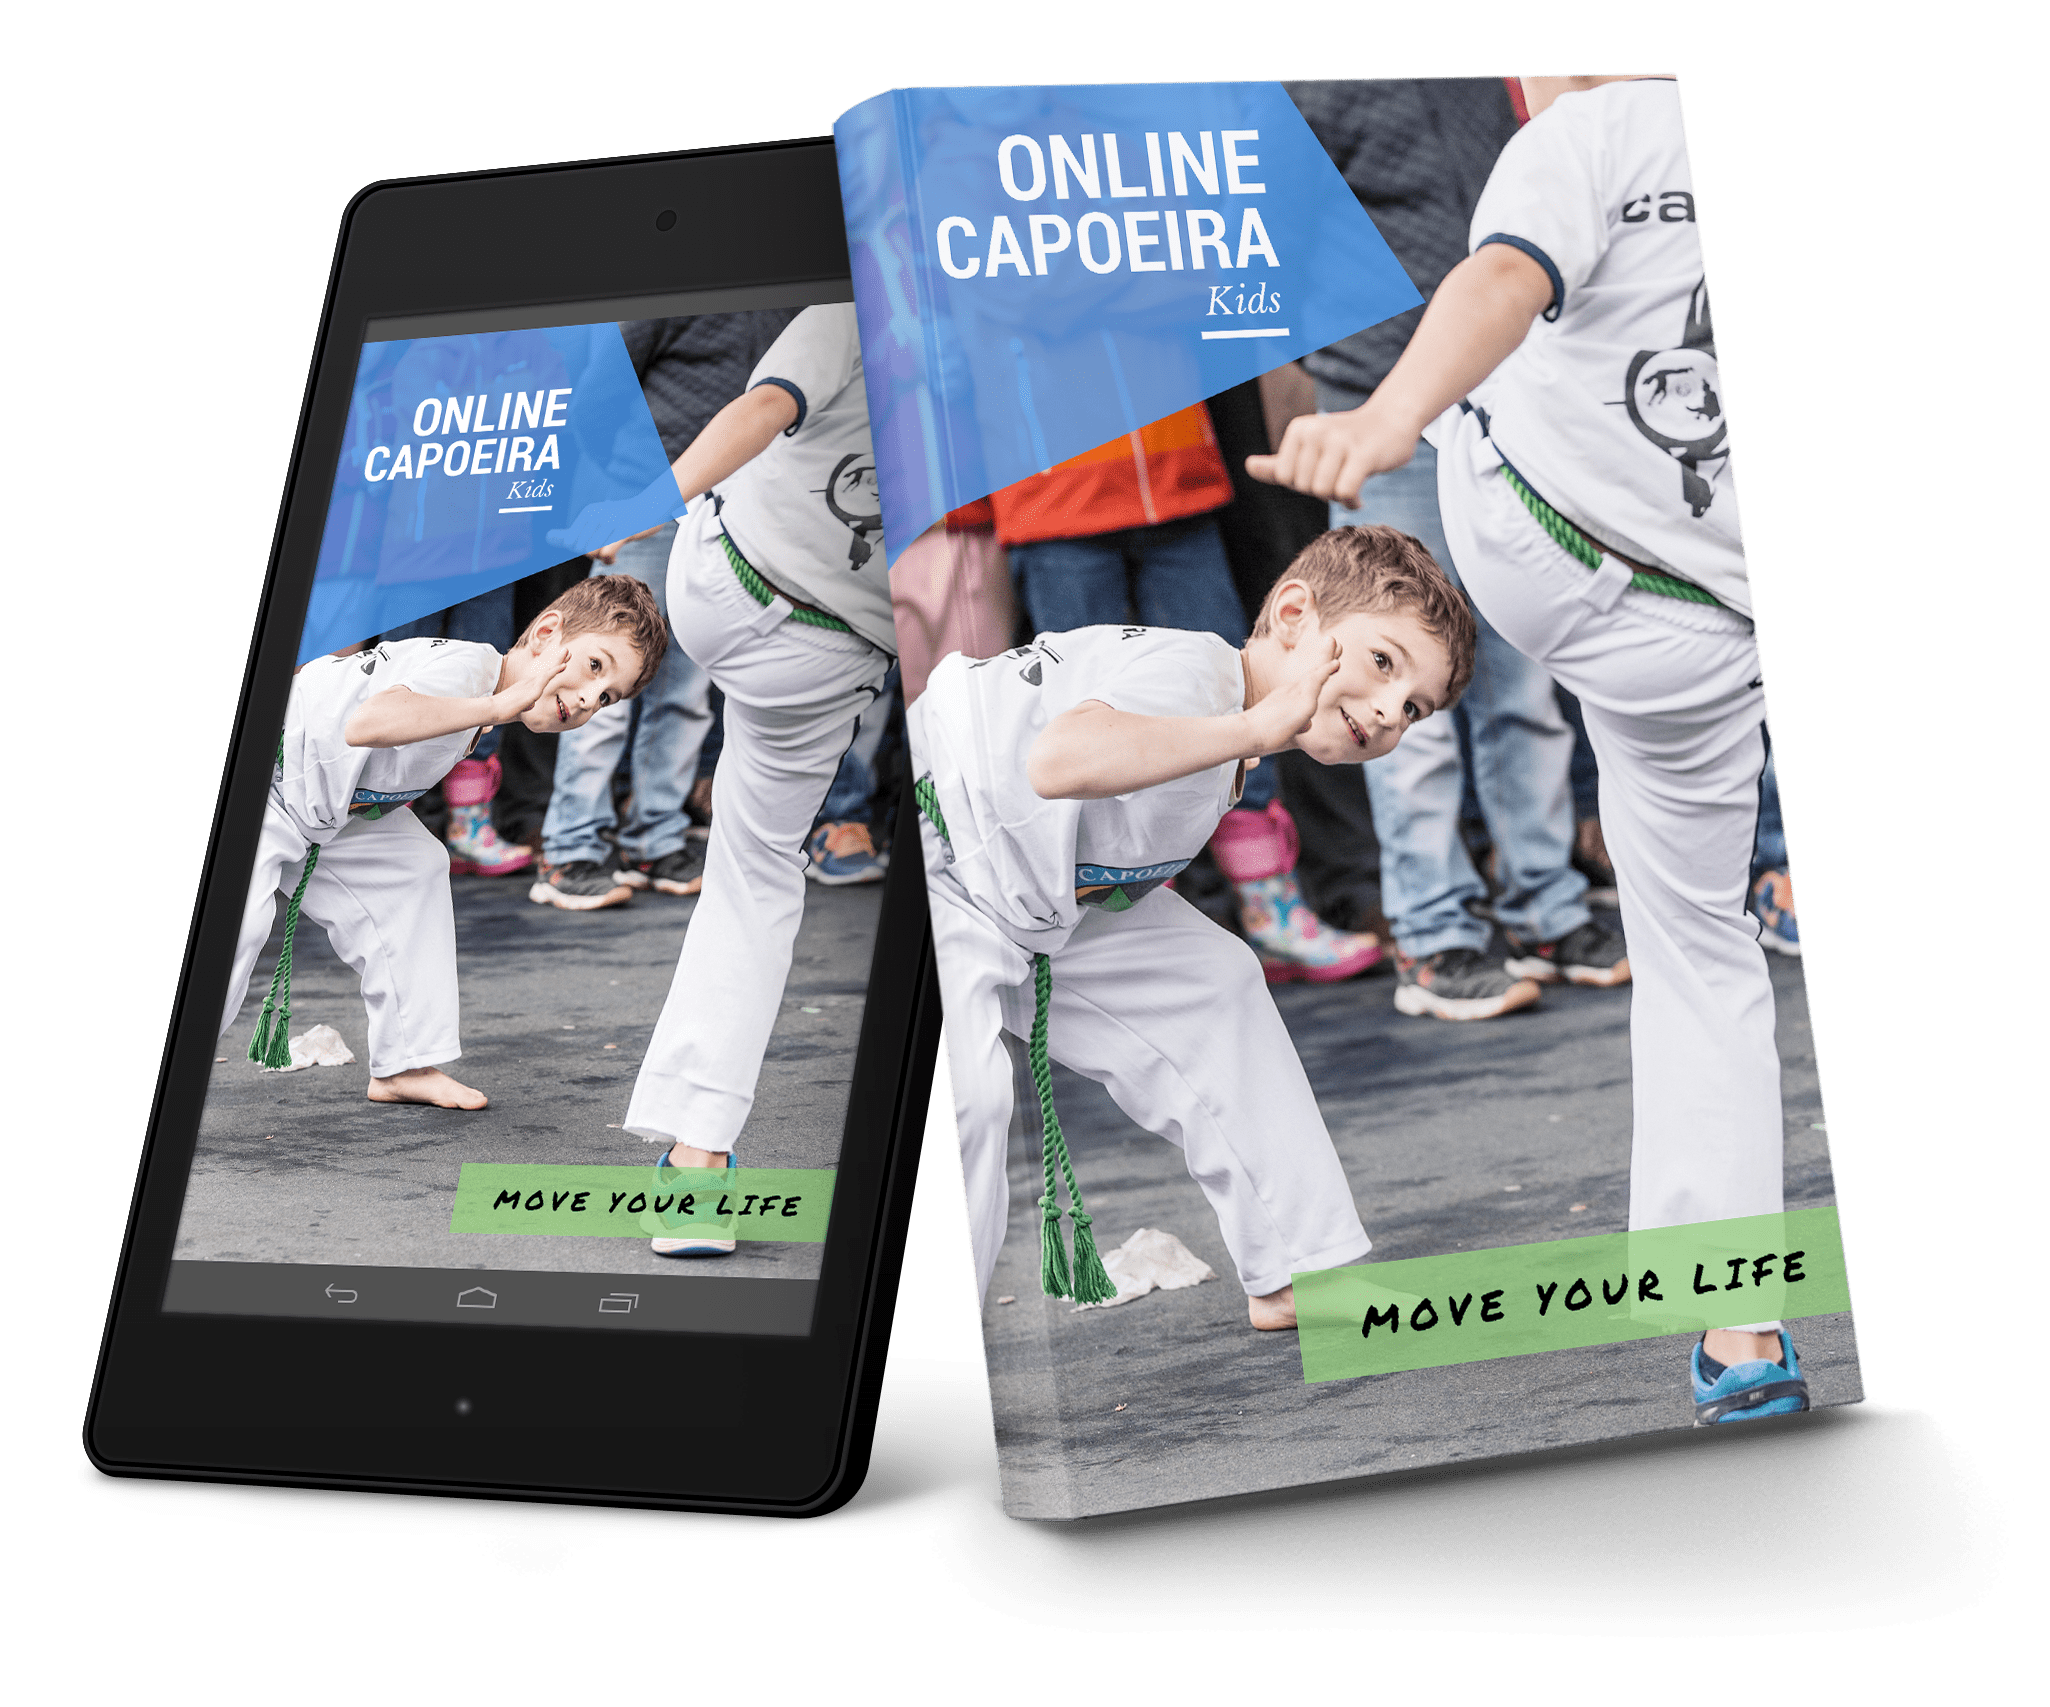 Online Capoeira